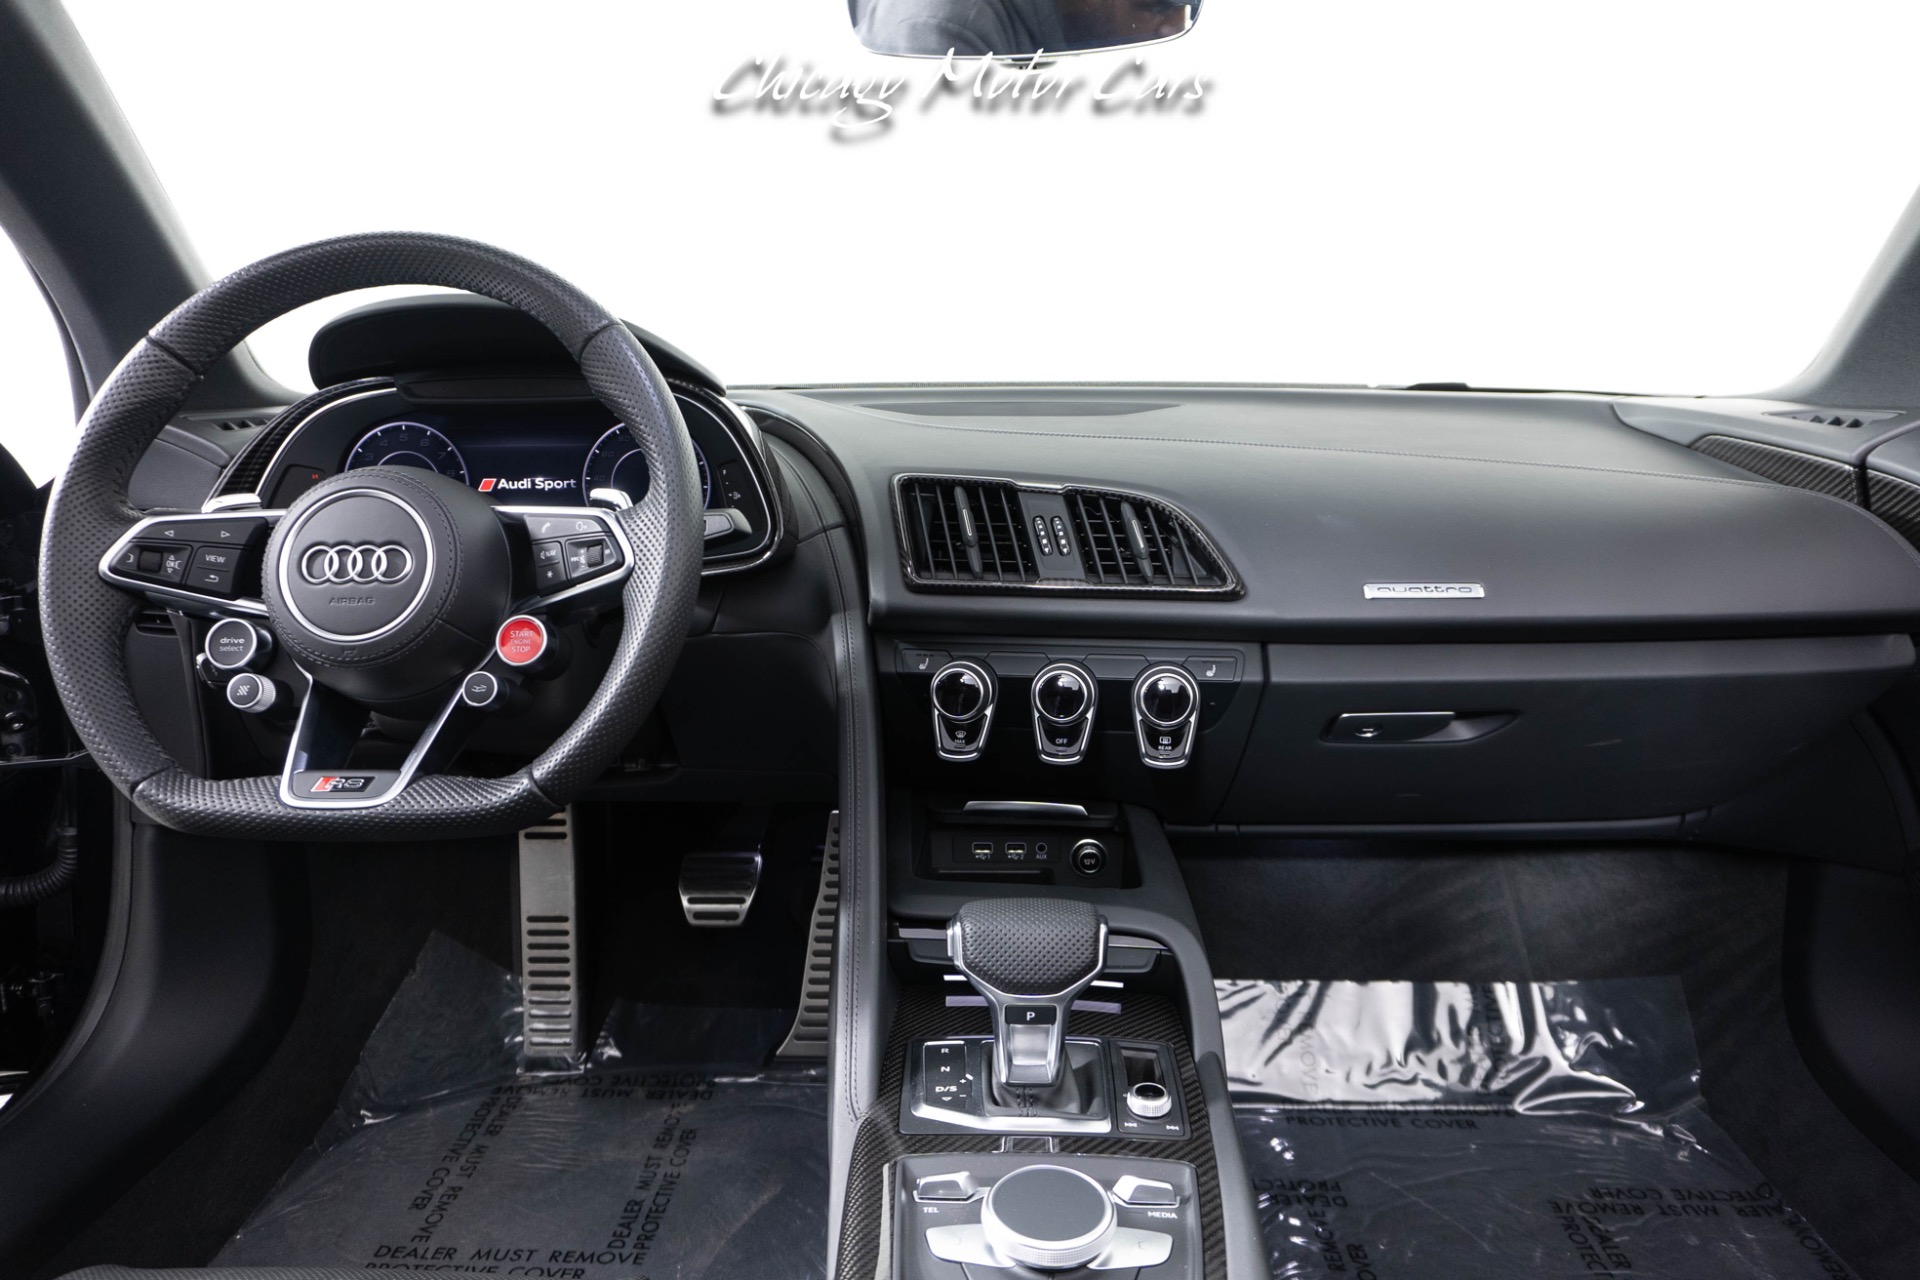 Used-2020-Audi-R8-52-quattro-V10-Performance-Spyder-Carbon-Fiber-MSRP-226k-Only-2400-Miles